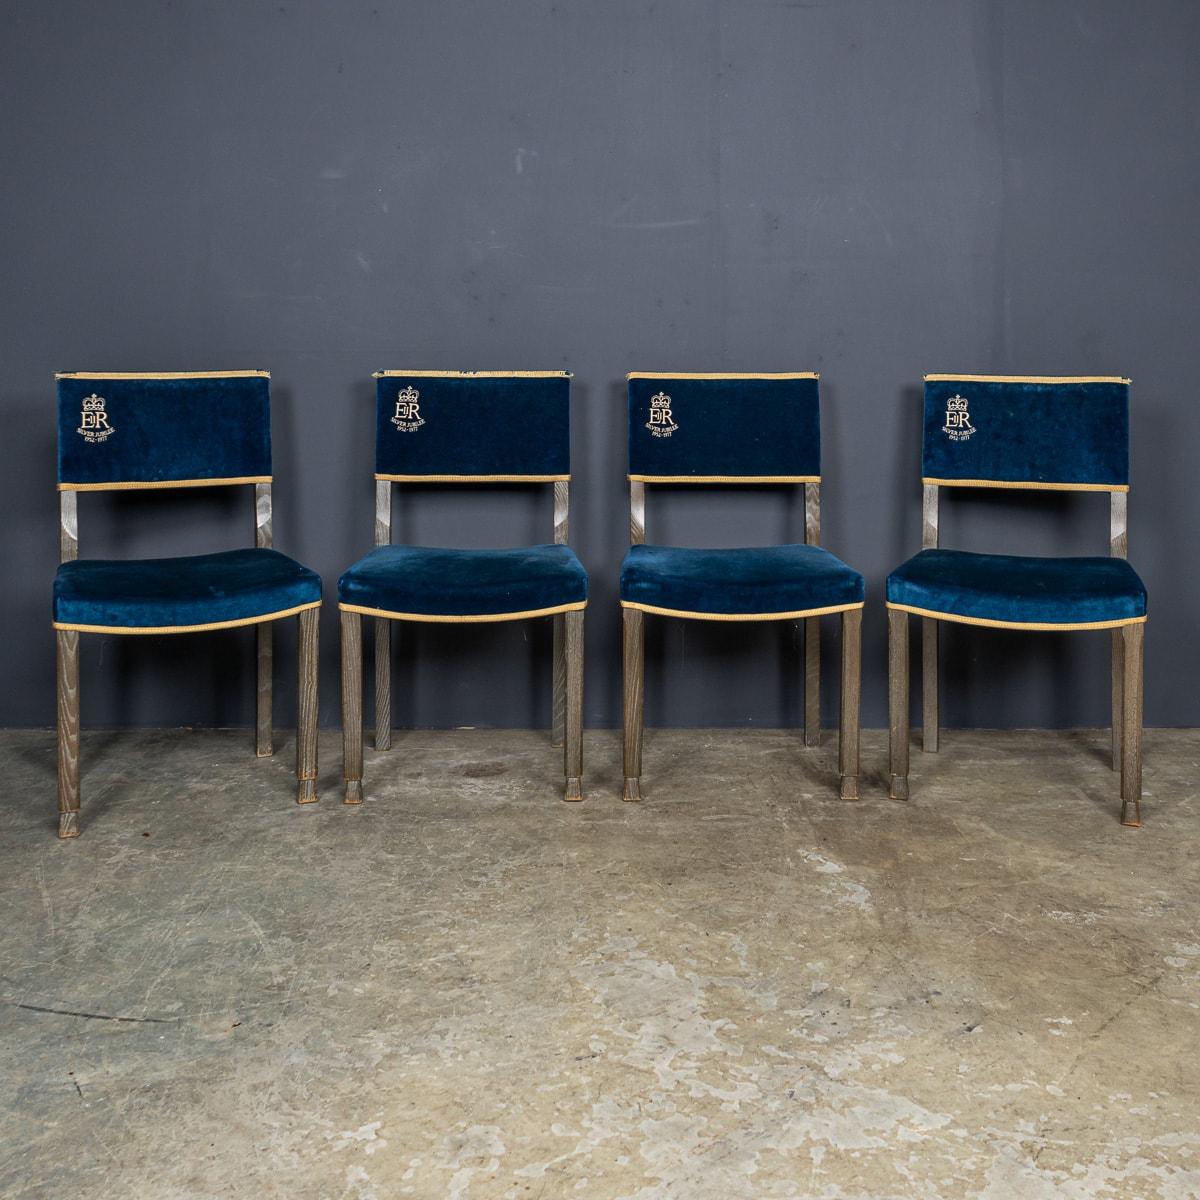 Superbe ensemble de quatre chaises en velours bleu du 20e siècle, inspirées des chaises utilisées par les pairs dans l'abbaye de Westminster lors du couronnement de la reine Elizabeth en 1952. Recréées pour son jubilé en 1977, ces chaises sont